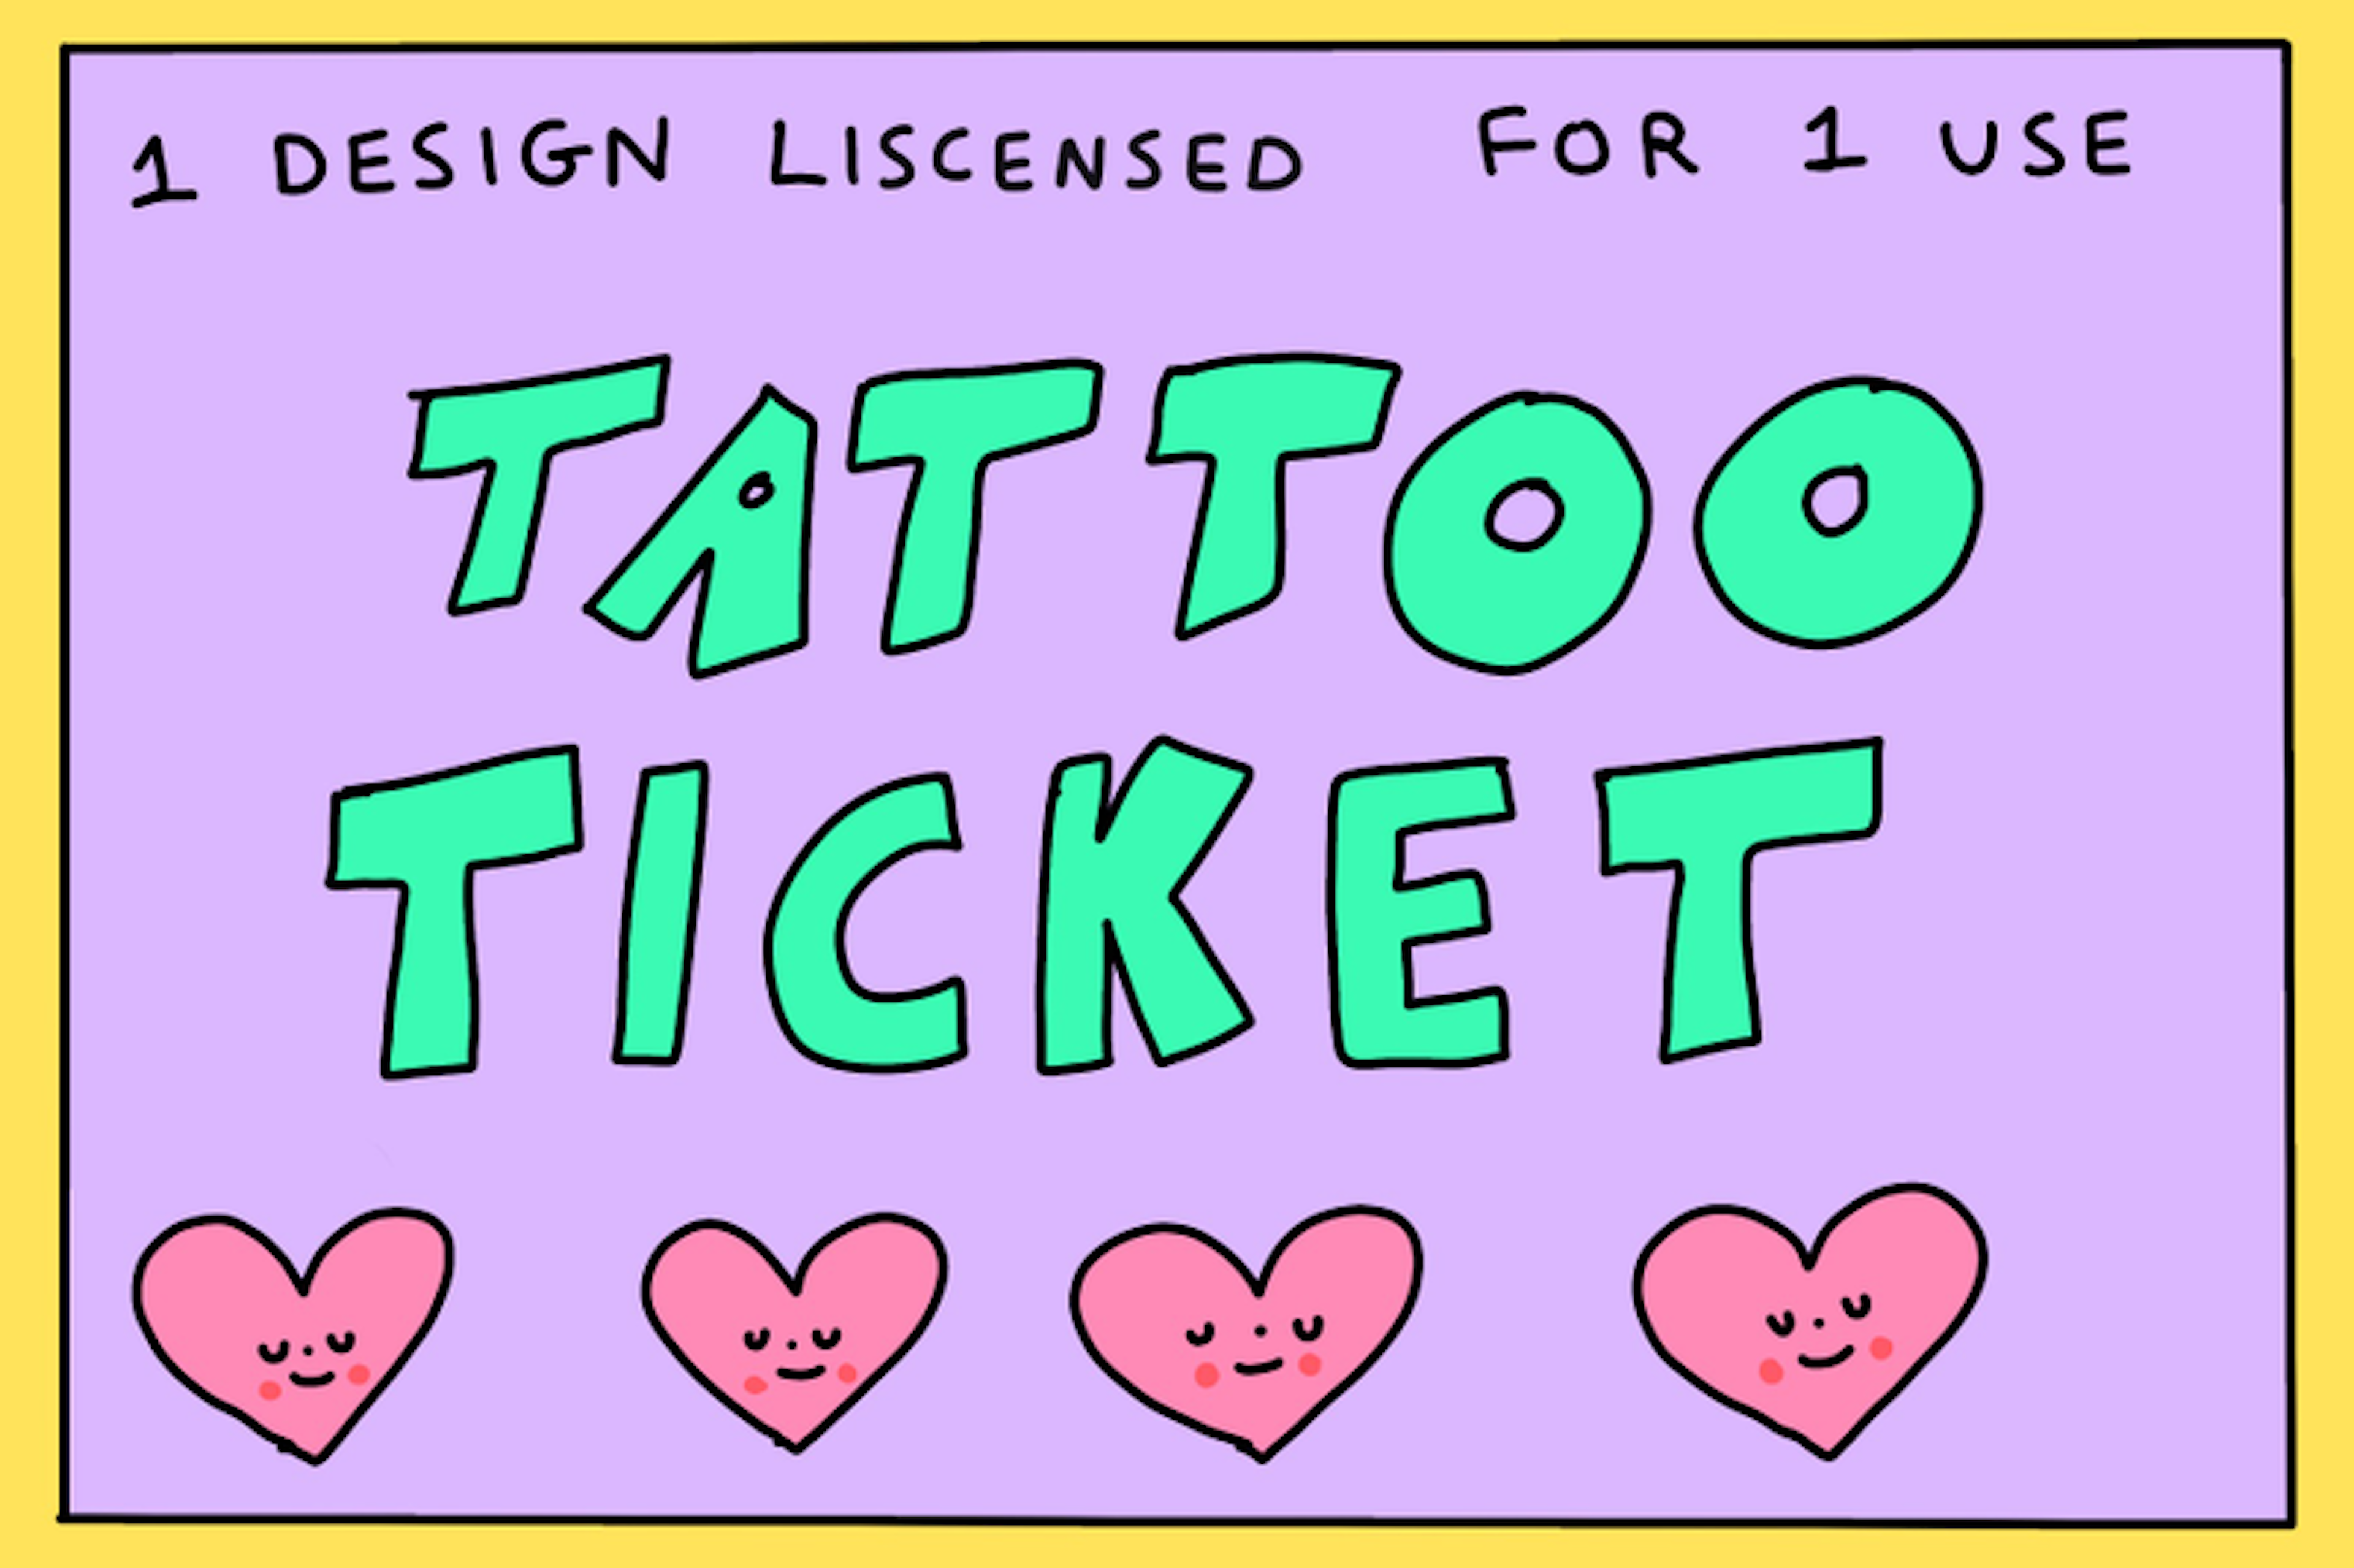 Tattoo Ticket 